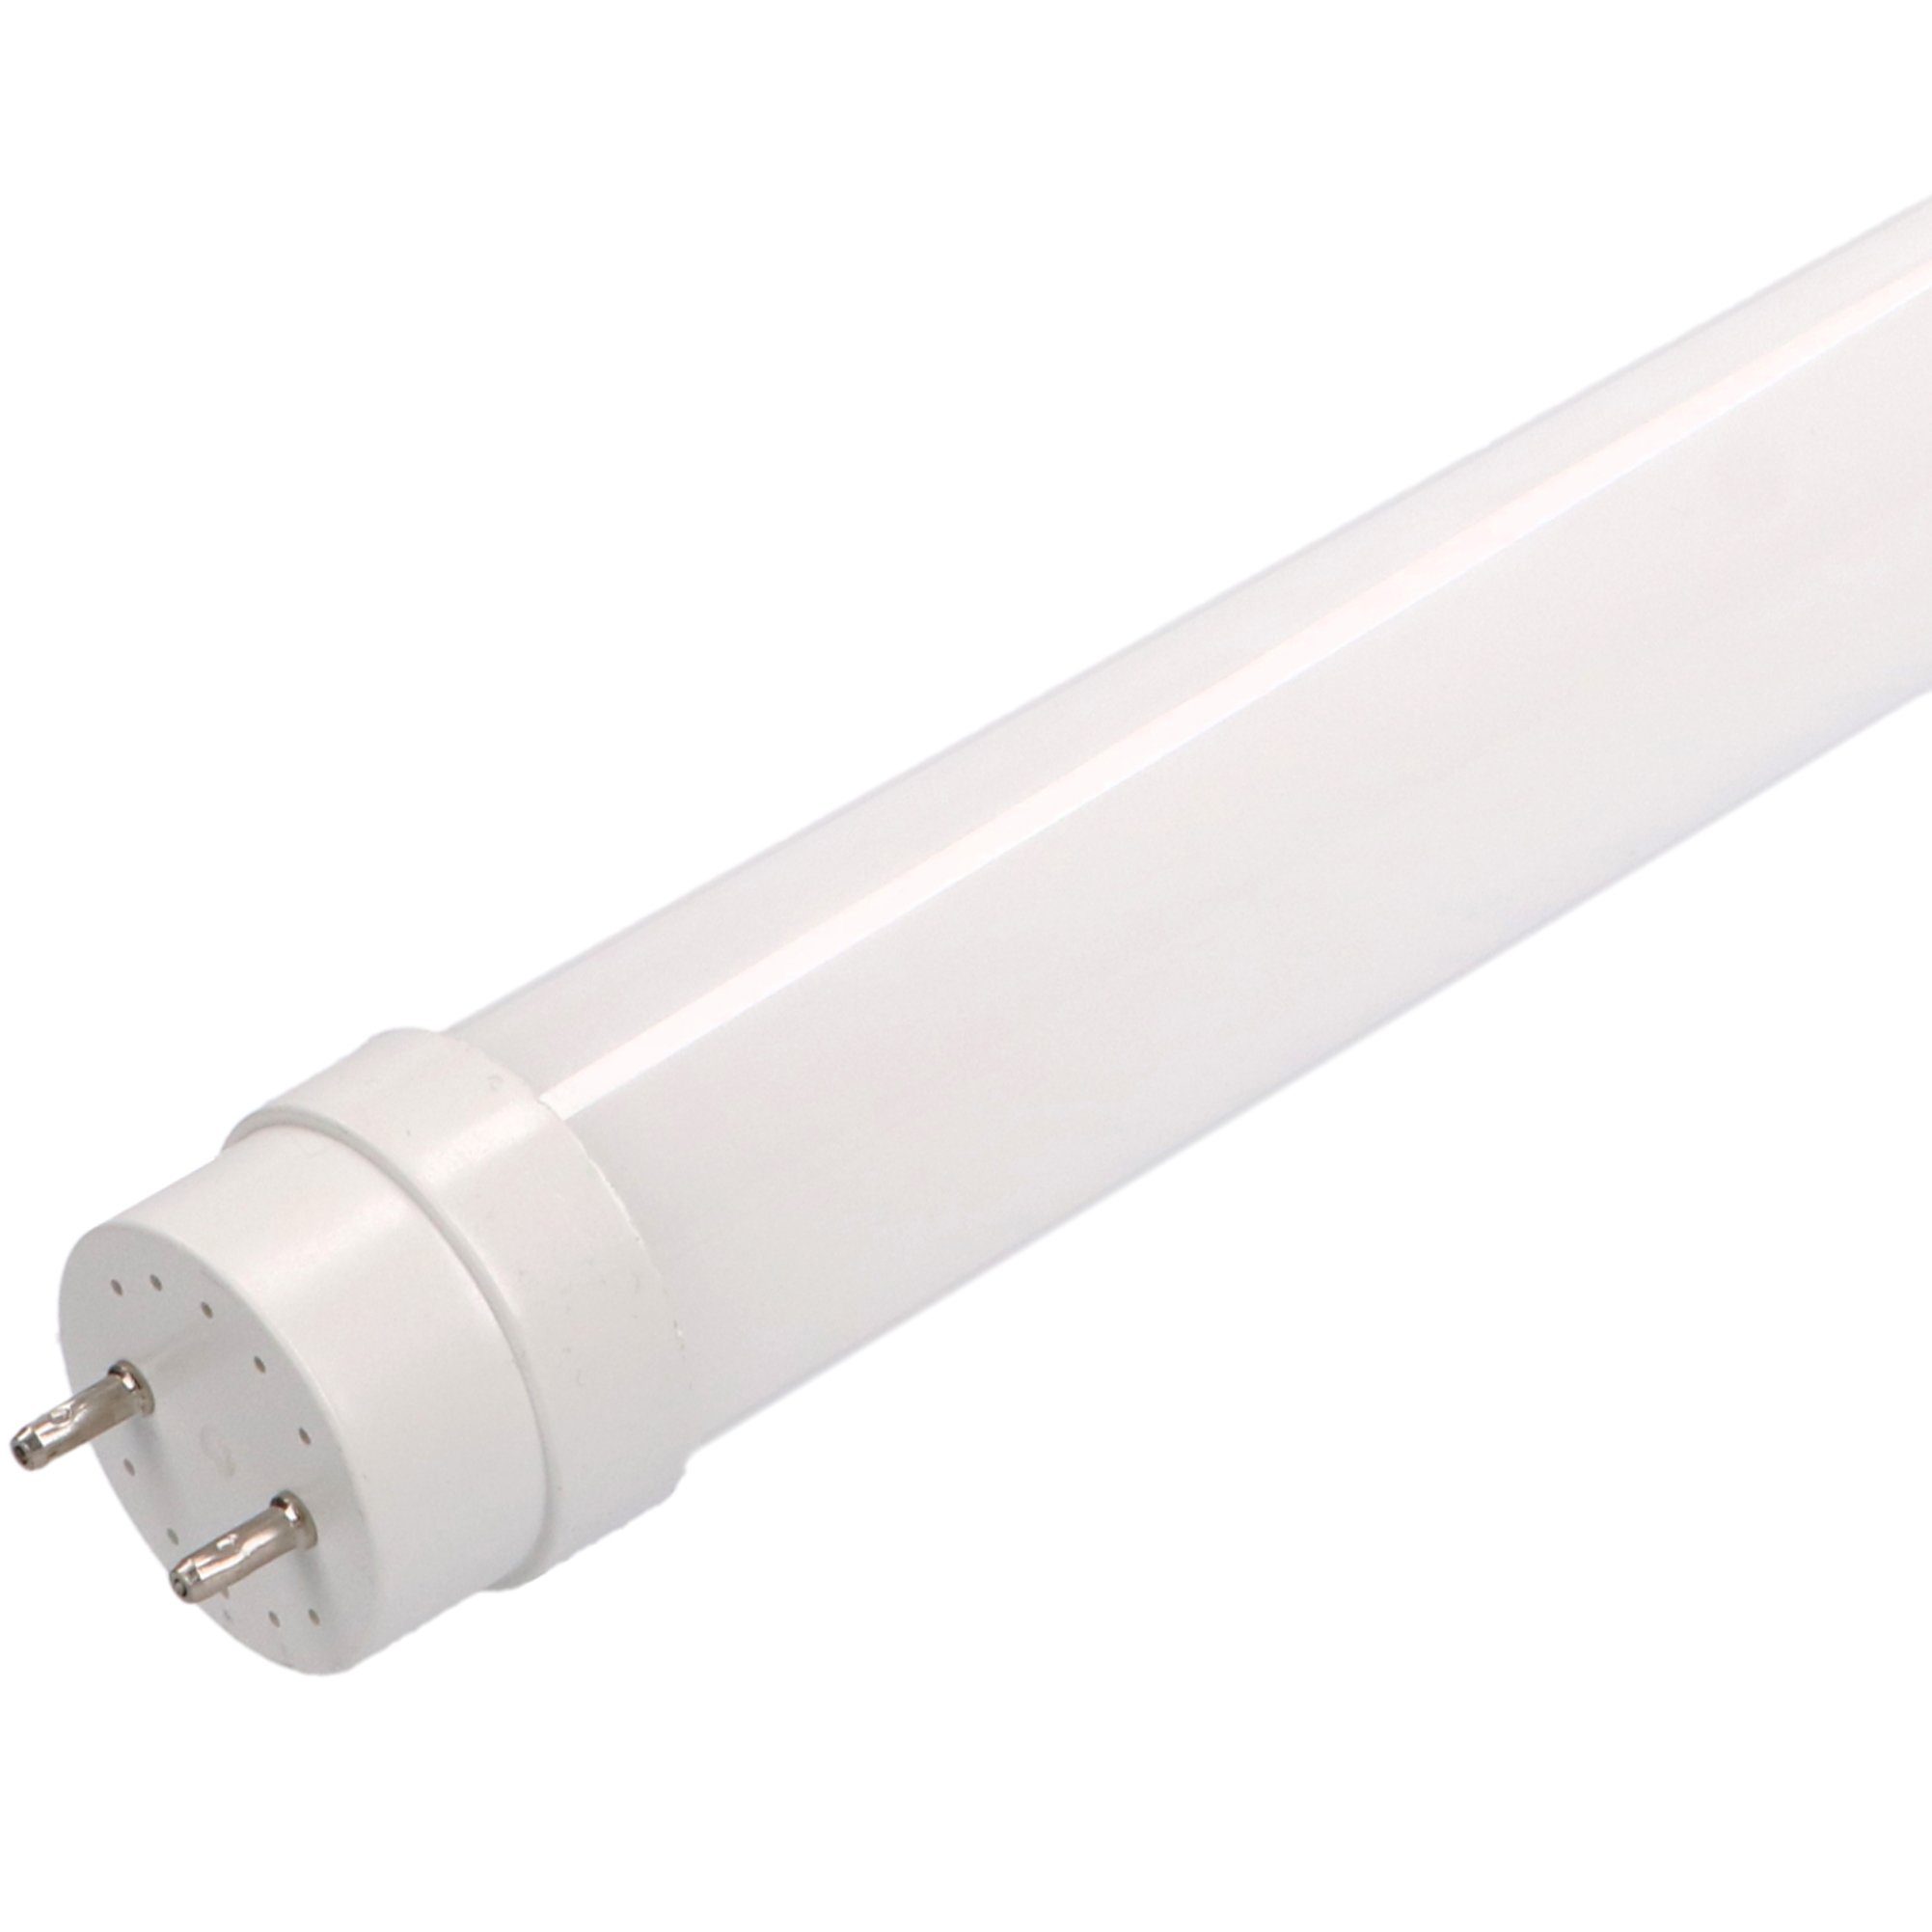 LED's light Basic LED-Leuchtmittel 0610723 LED-Röhre, 90 cm 12 Watt warmweiß G13 mit Starter für KVG/VVG